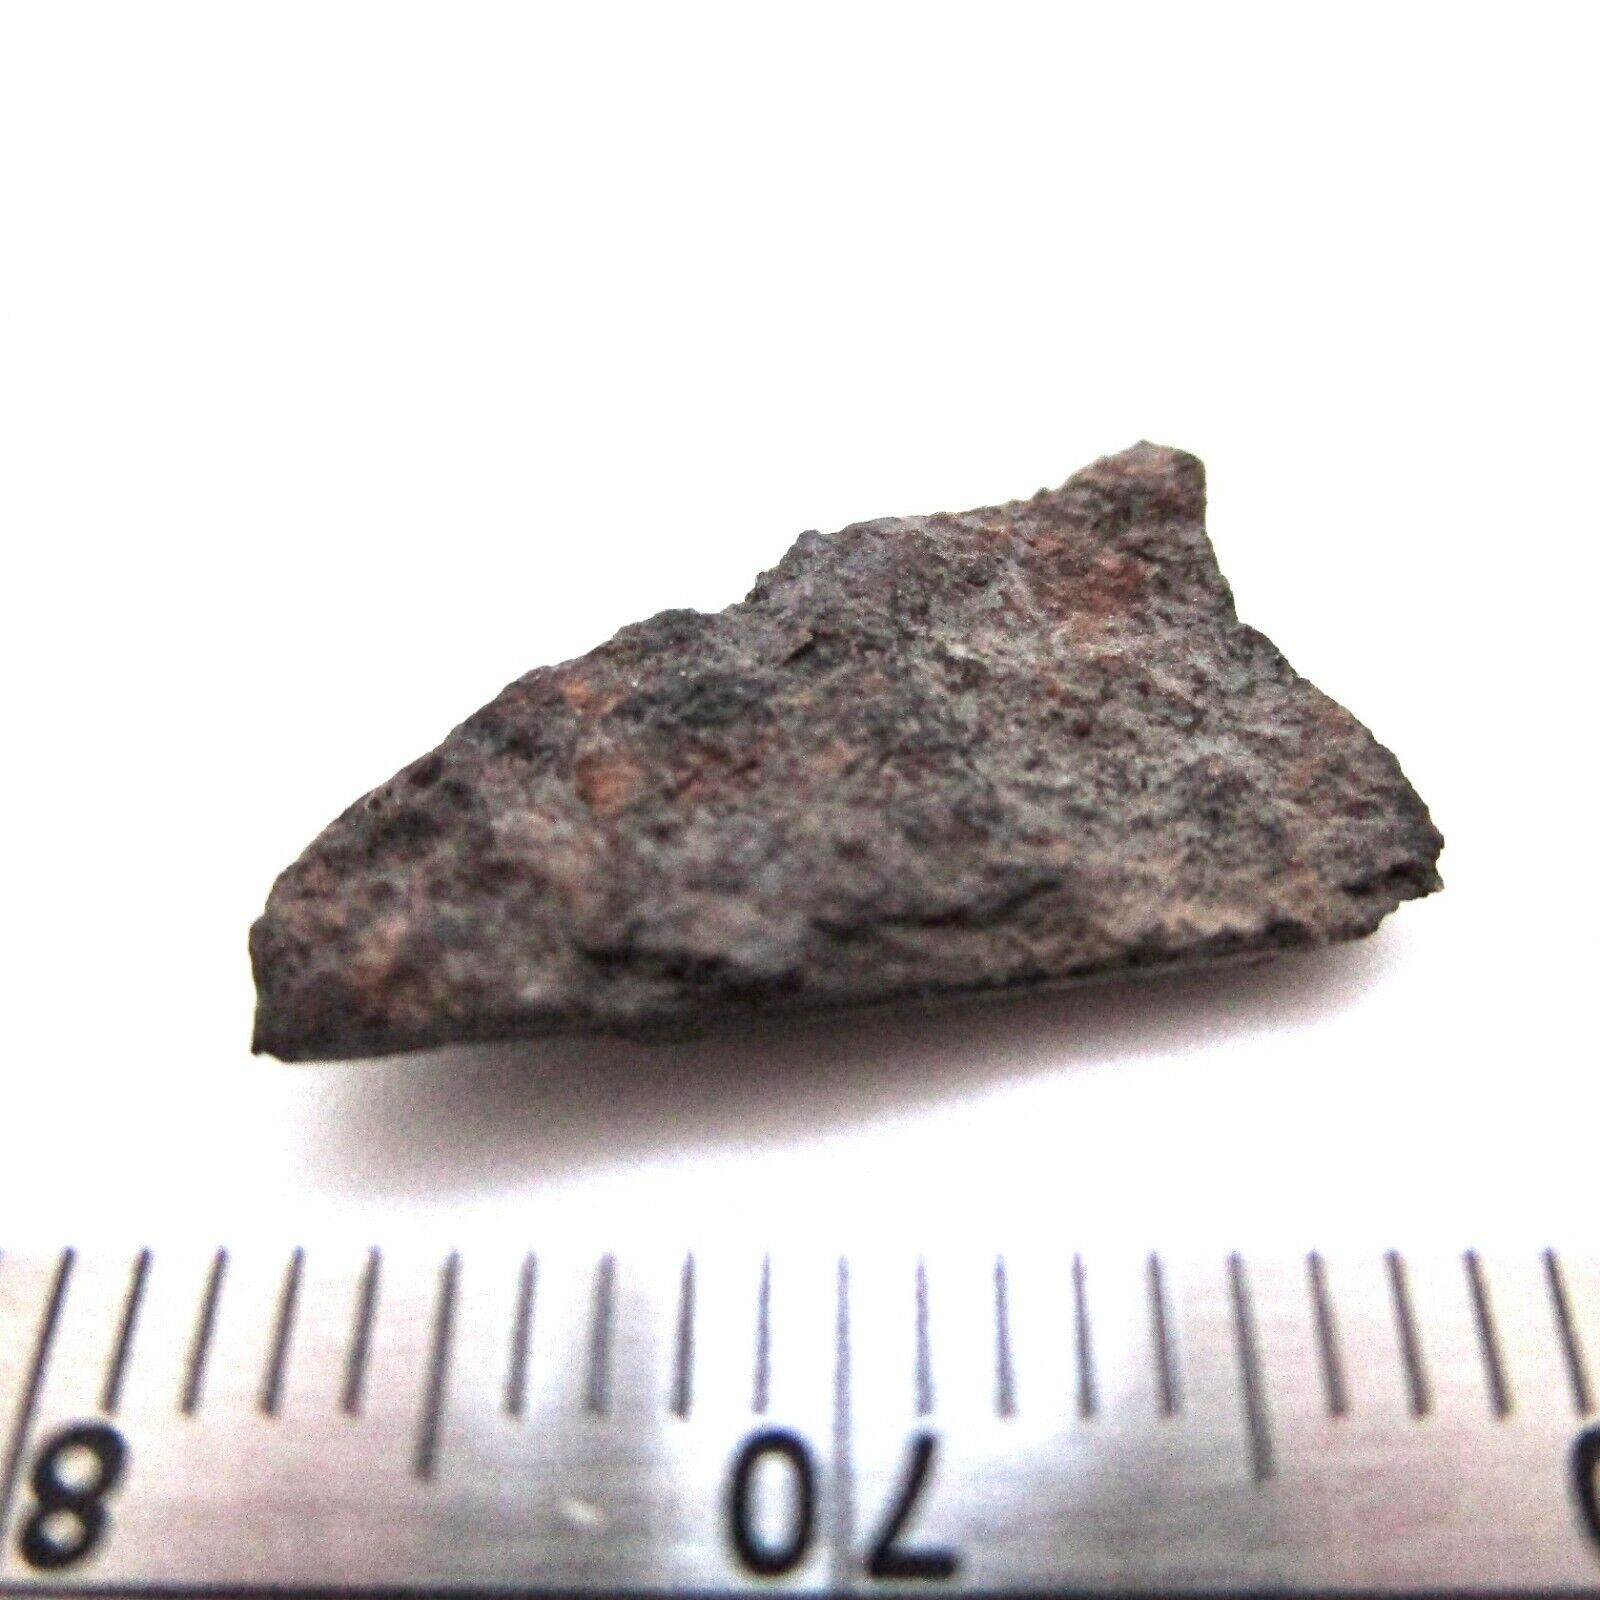 Vyatka meteorite fragment - 0.77 gram H4 chondrite - Russia